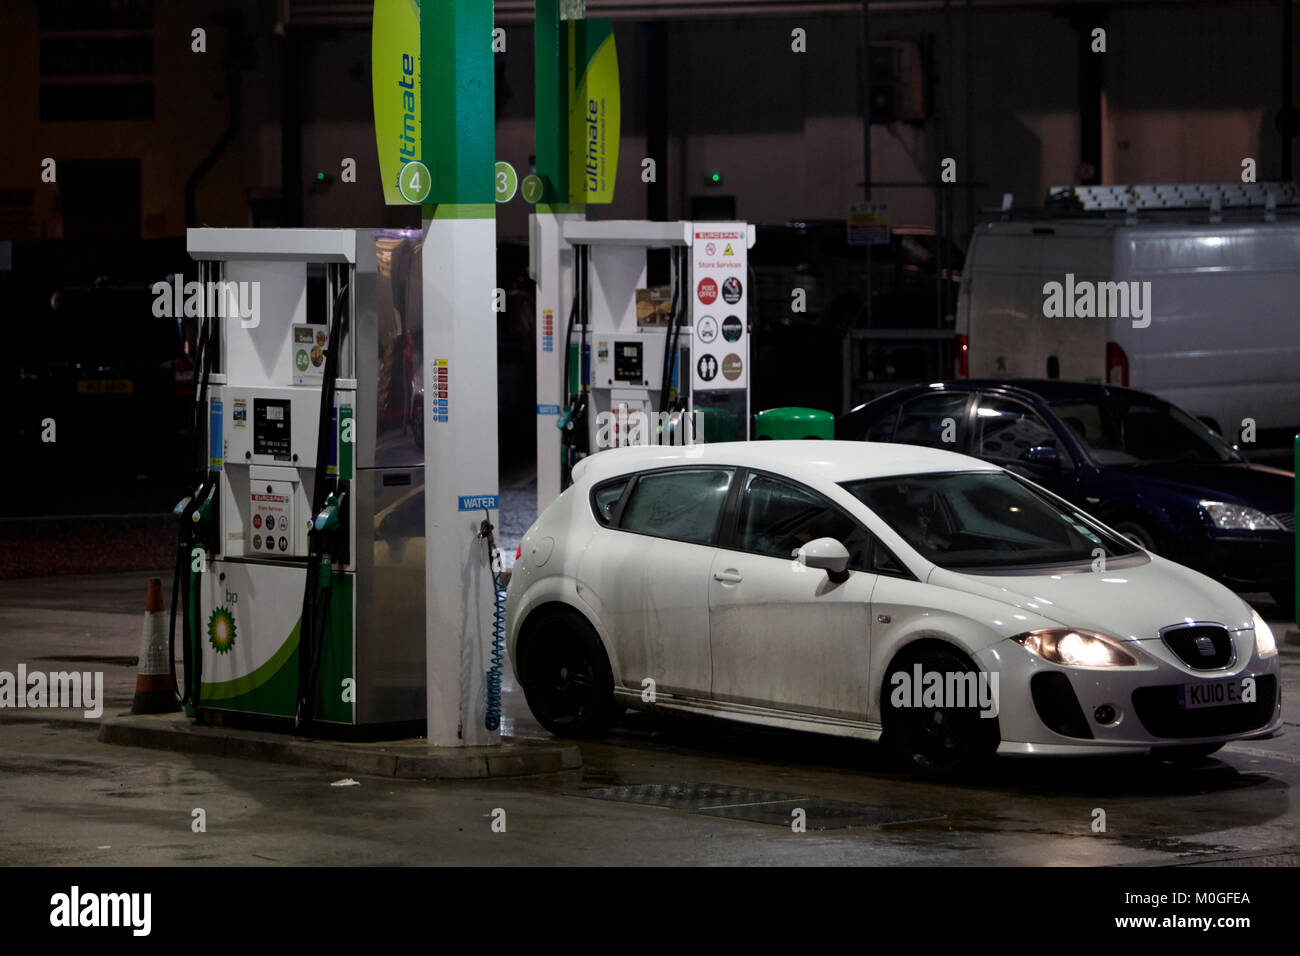 Location d'un plein à garage bp avant-cour avec pompes à essence automatique la nuit au Royaume-Uni Banque D'Images